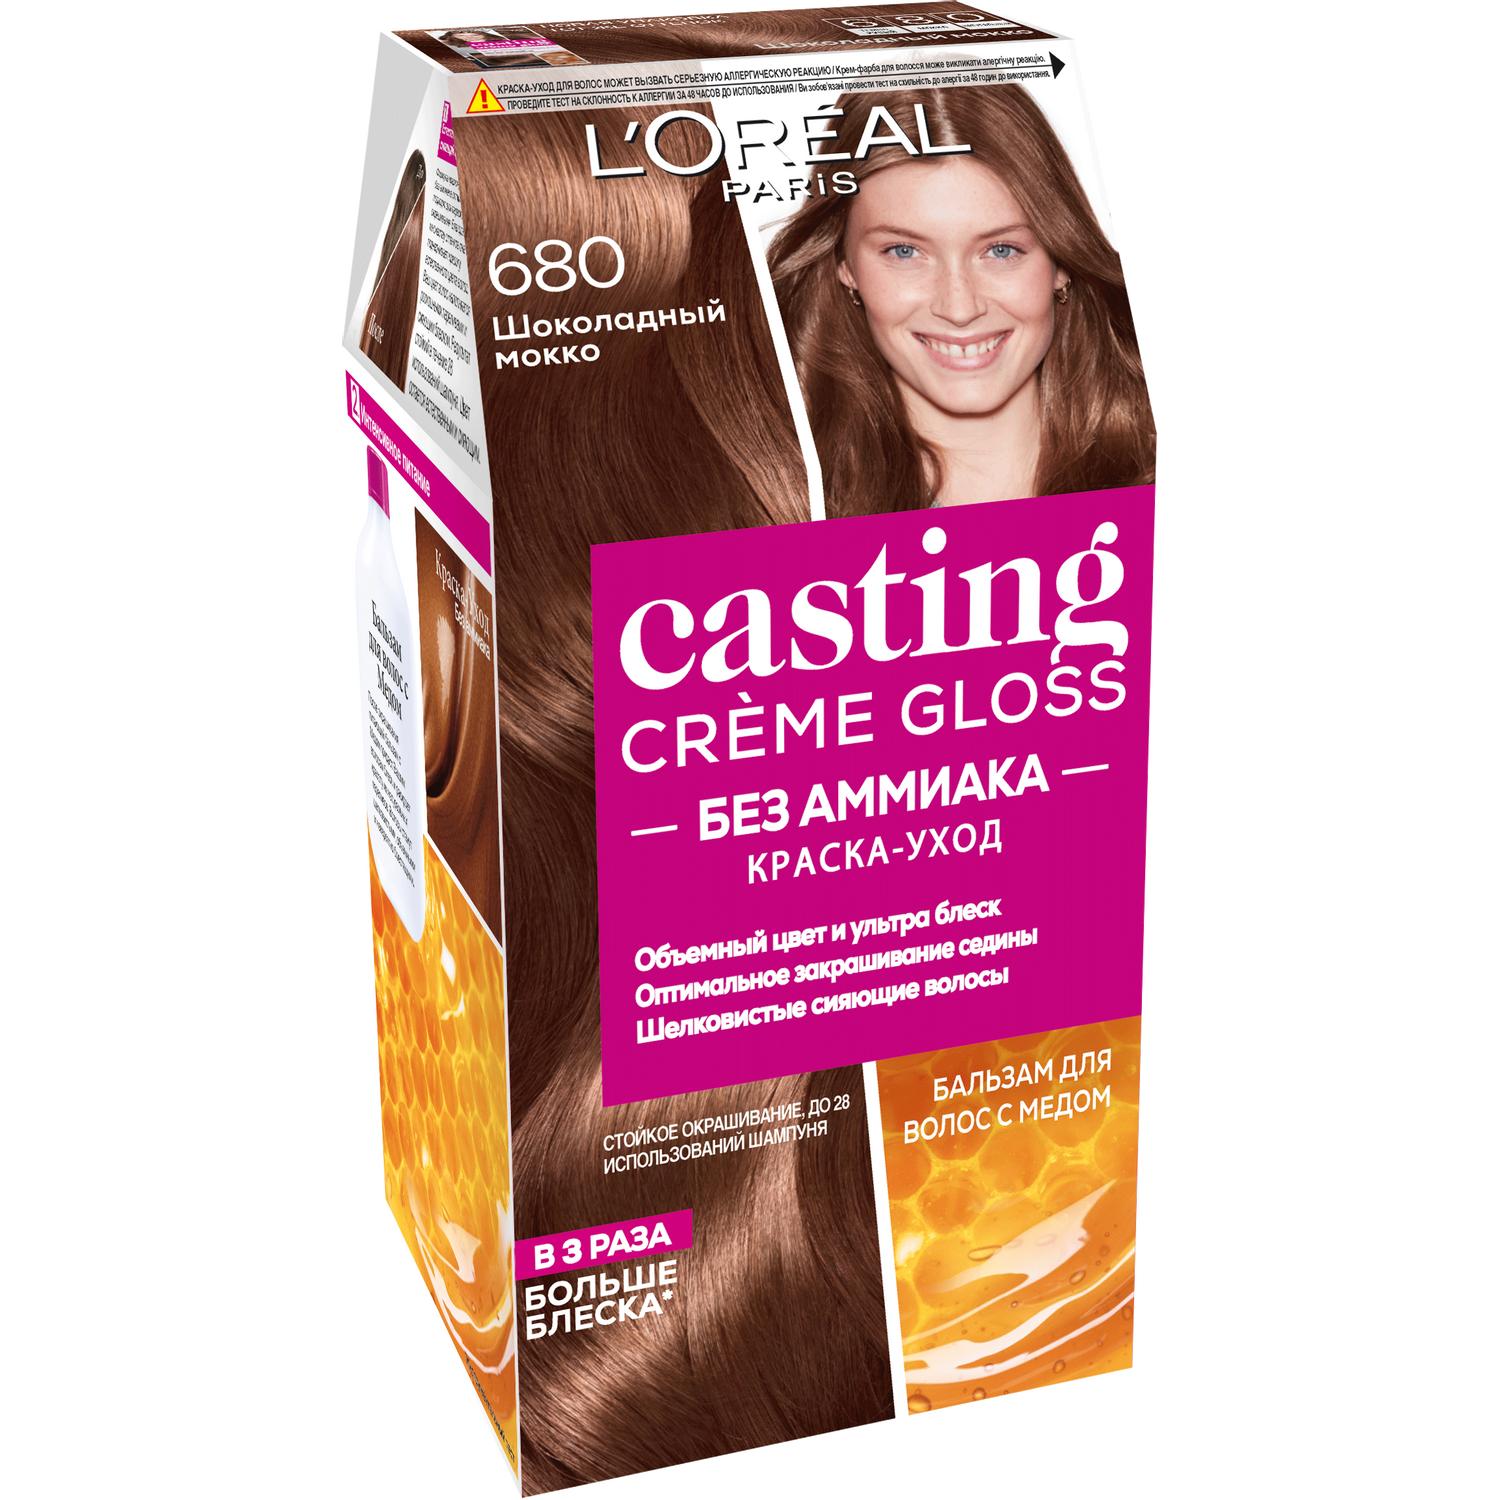 фото Краска для волос l'oreal paris casting creme gloss 680 шоколадный мокко l'oréal paris